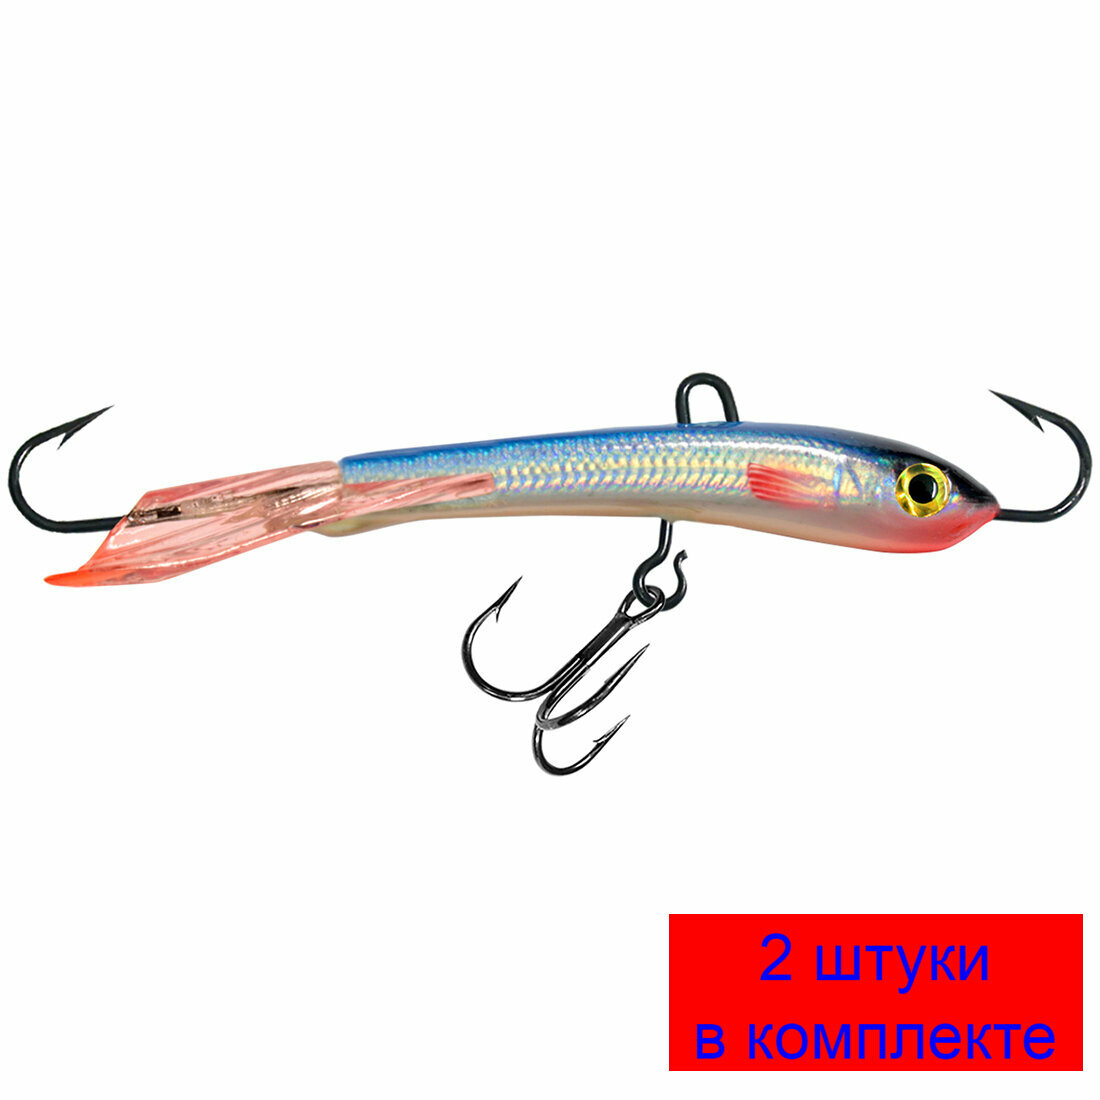 Балансир для рыбалки AQUA TRAPPER (new)-7 72mm цвет 015 (голубая спинка), 2 штуки